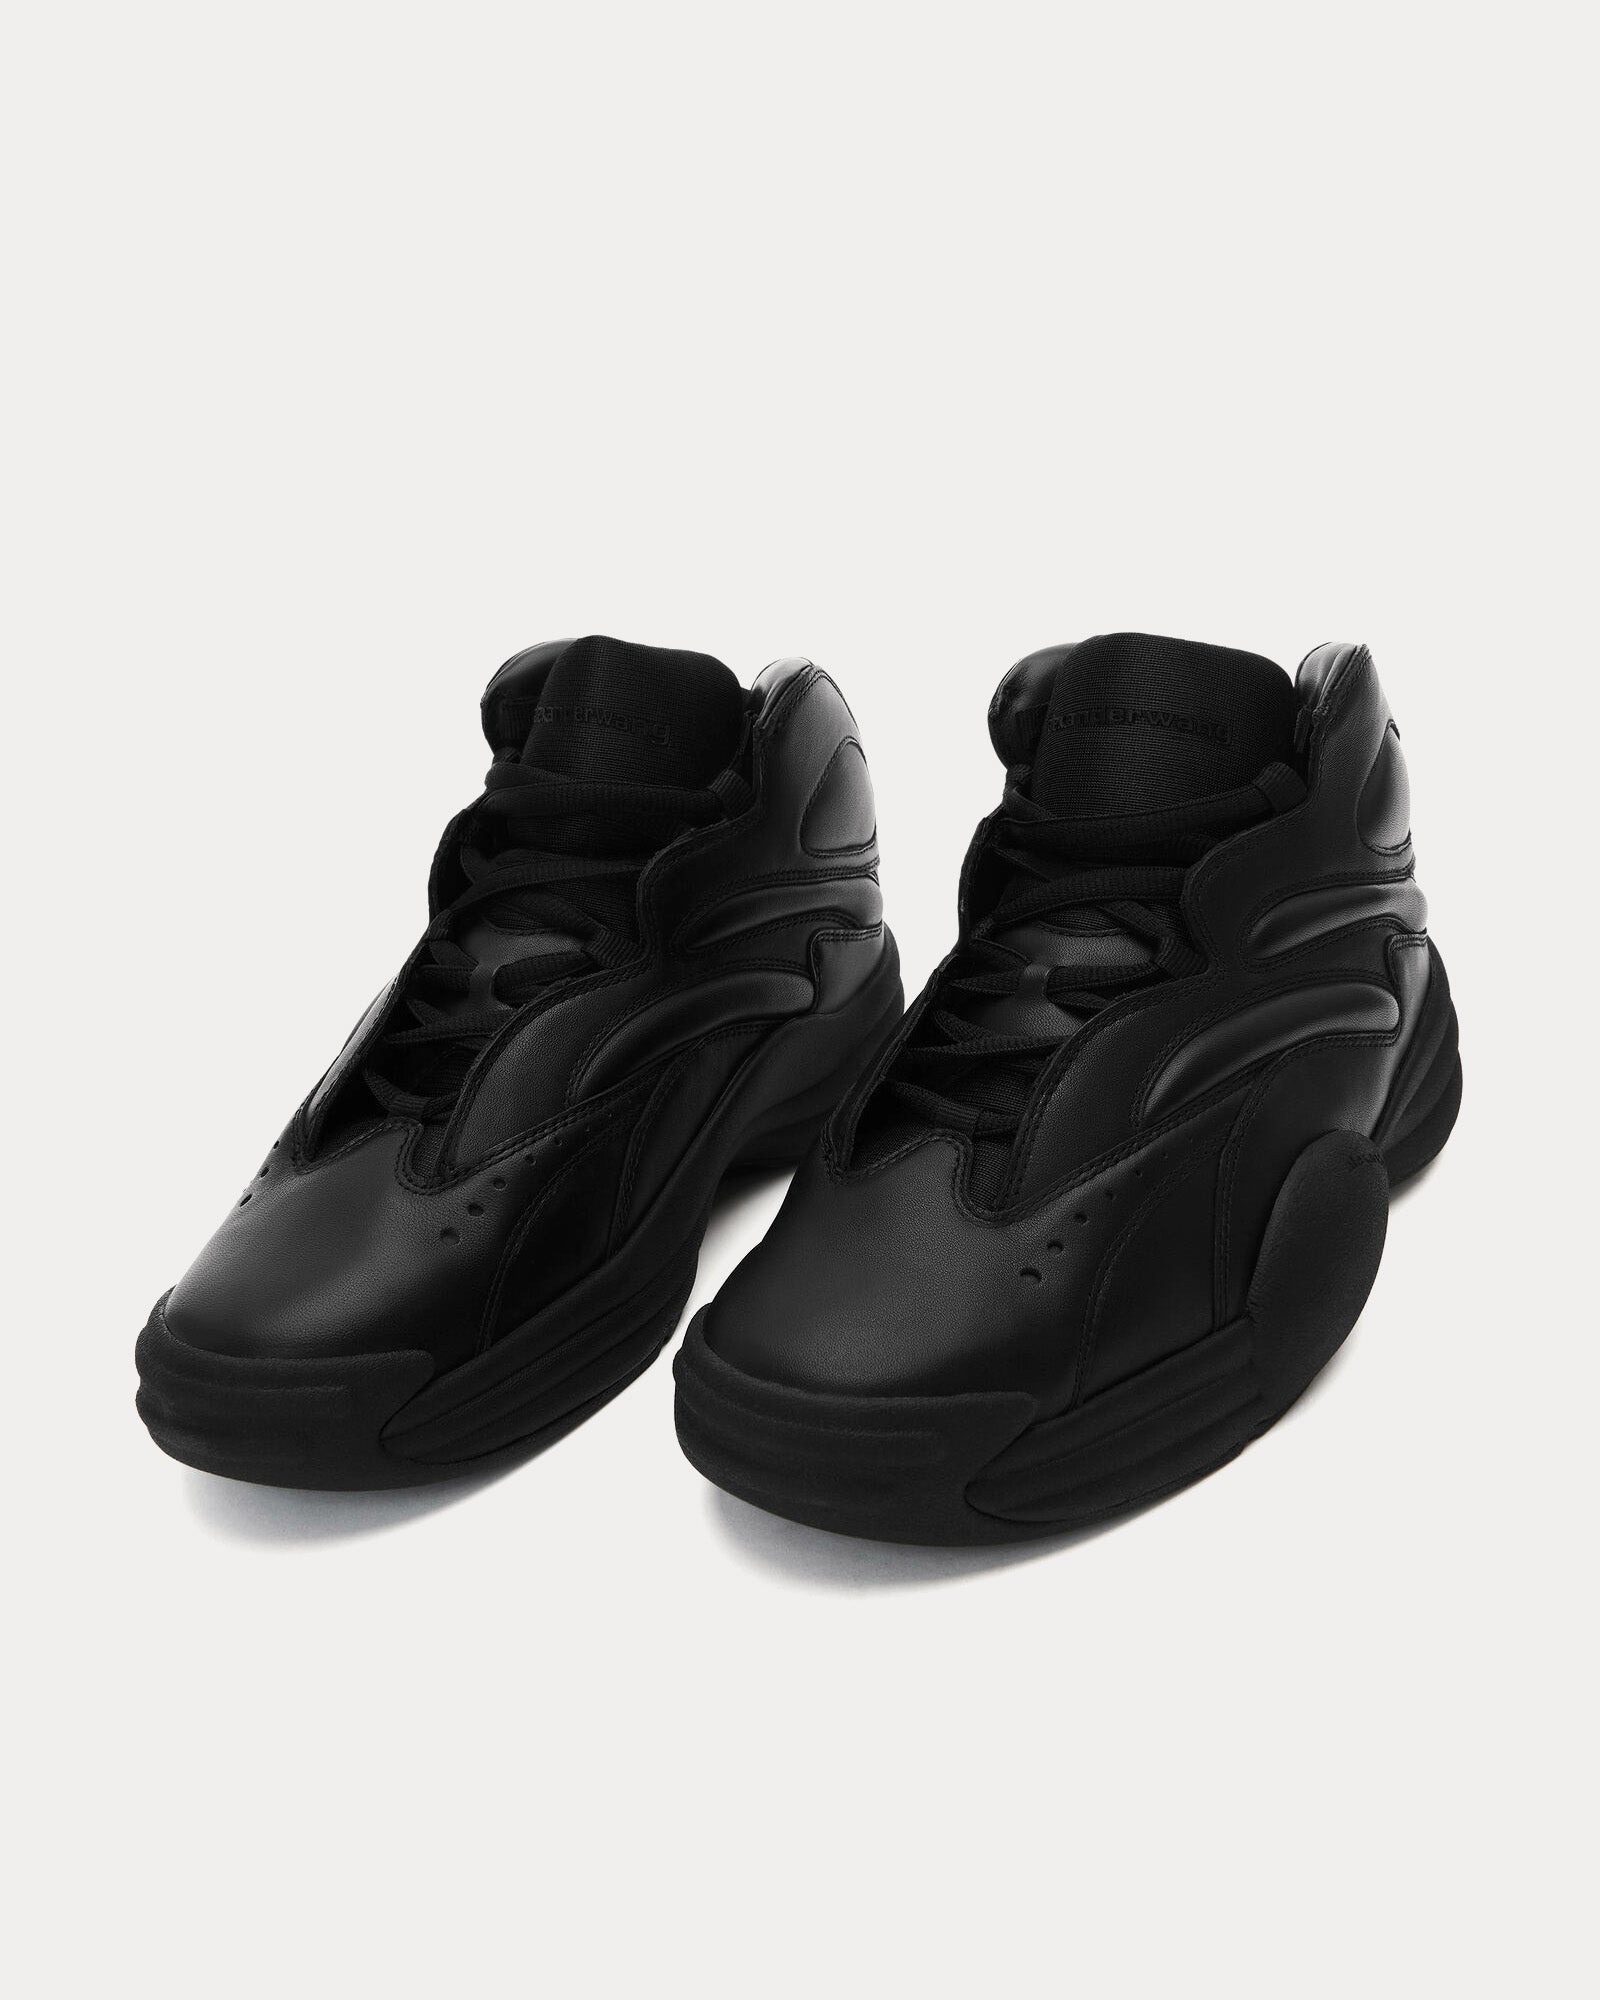 Alexander Wang - AW Hoop Leather Black High Top Sneakers